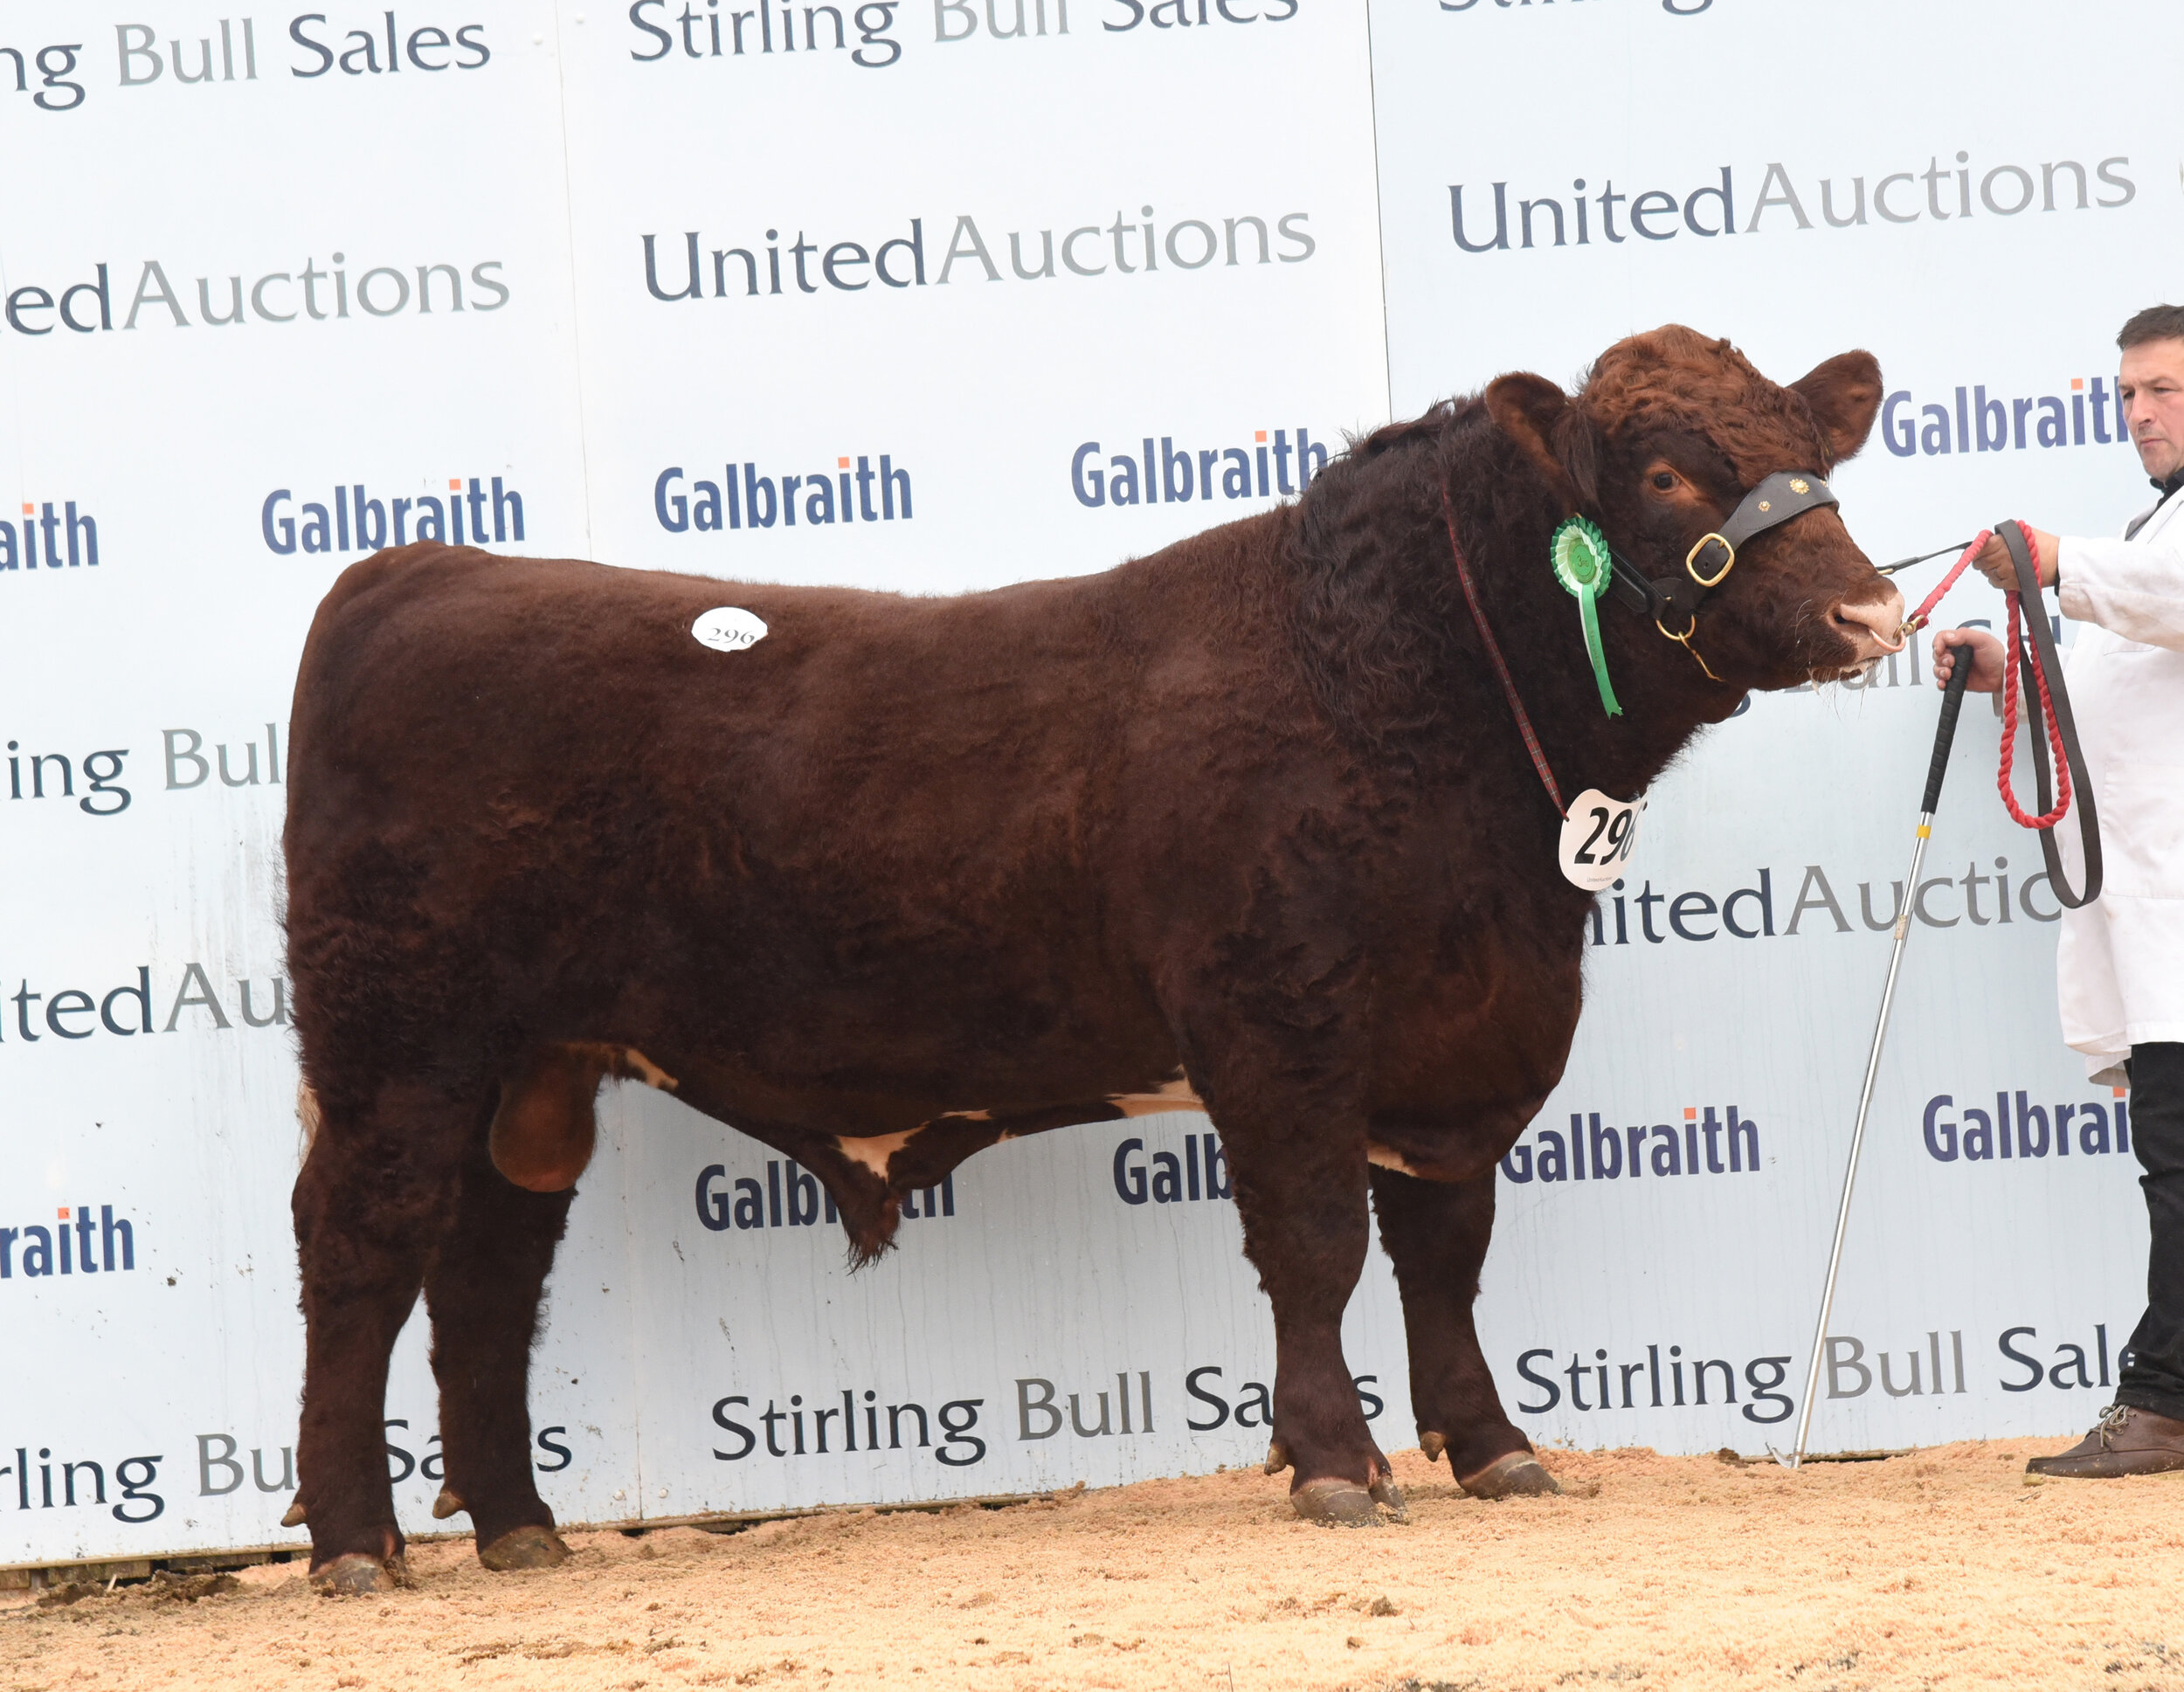 Knockenjig Ptarmigan sold for 6,000 gns at Stirling October 2021 Bull Sales